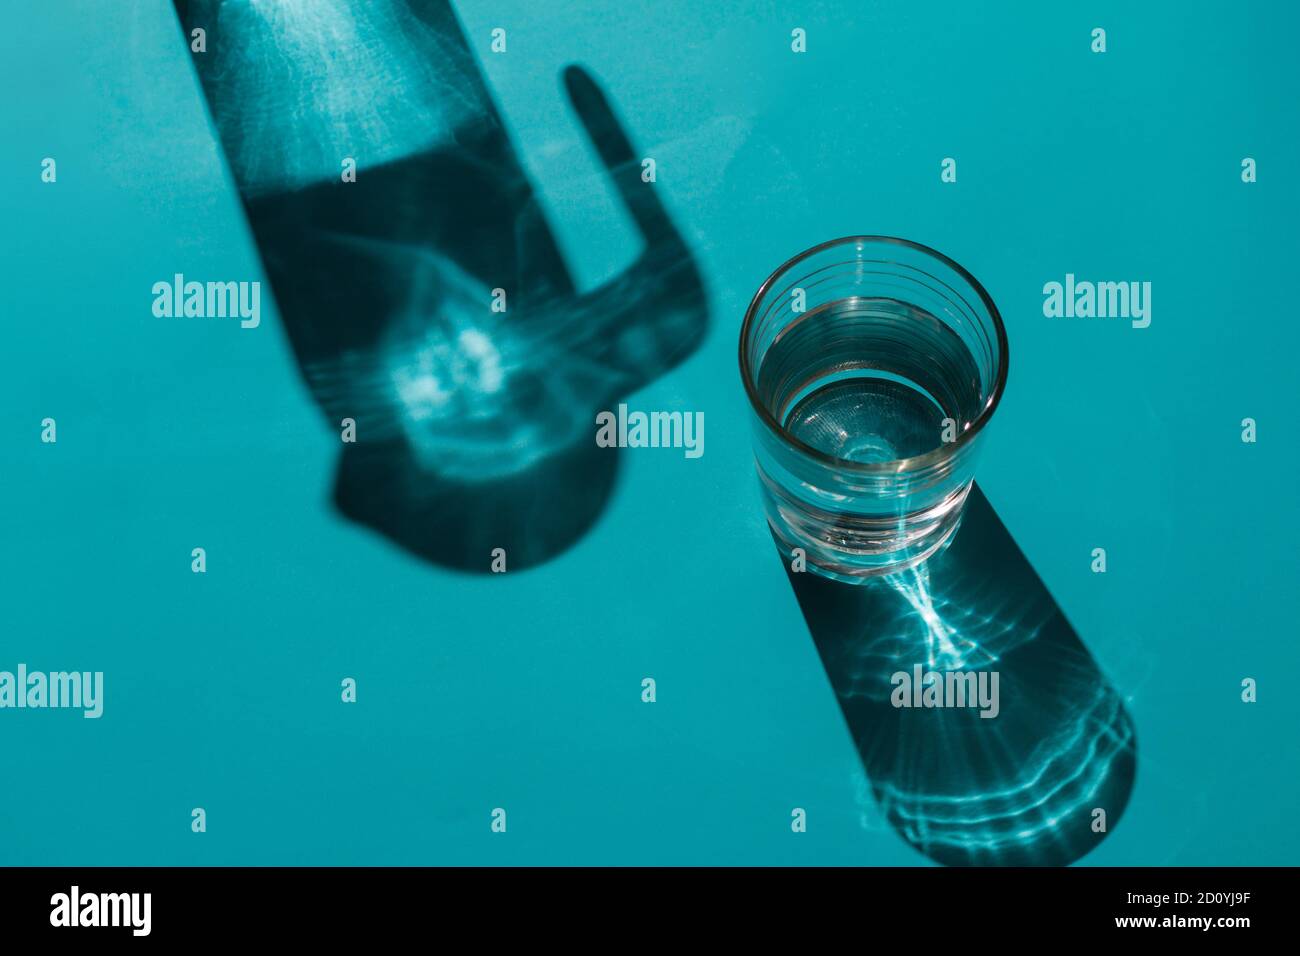 Un bicchiere con acqua accanto a una caraffa su un sfondo blu chiaro in cui vengono proiettate le ombre Foto Stock